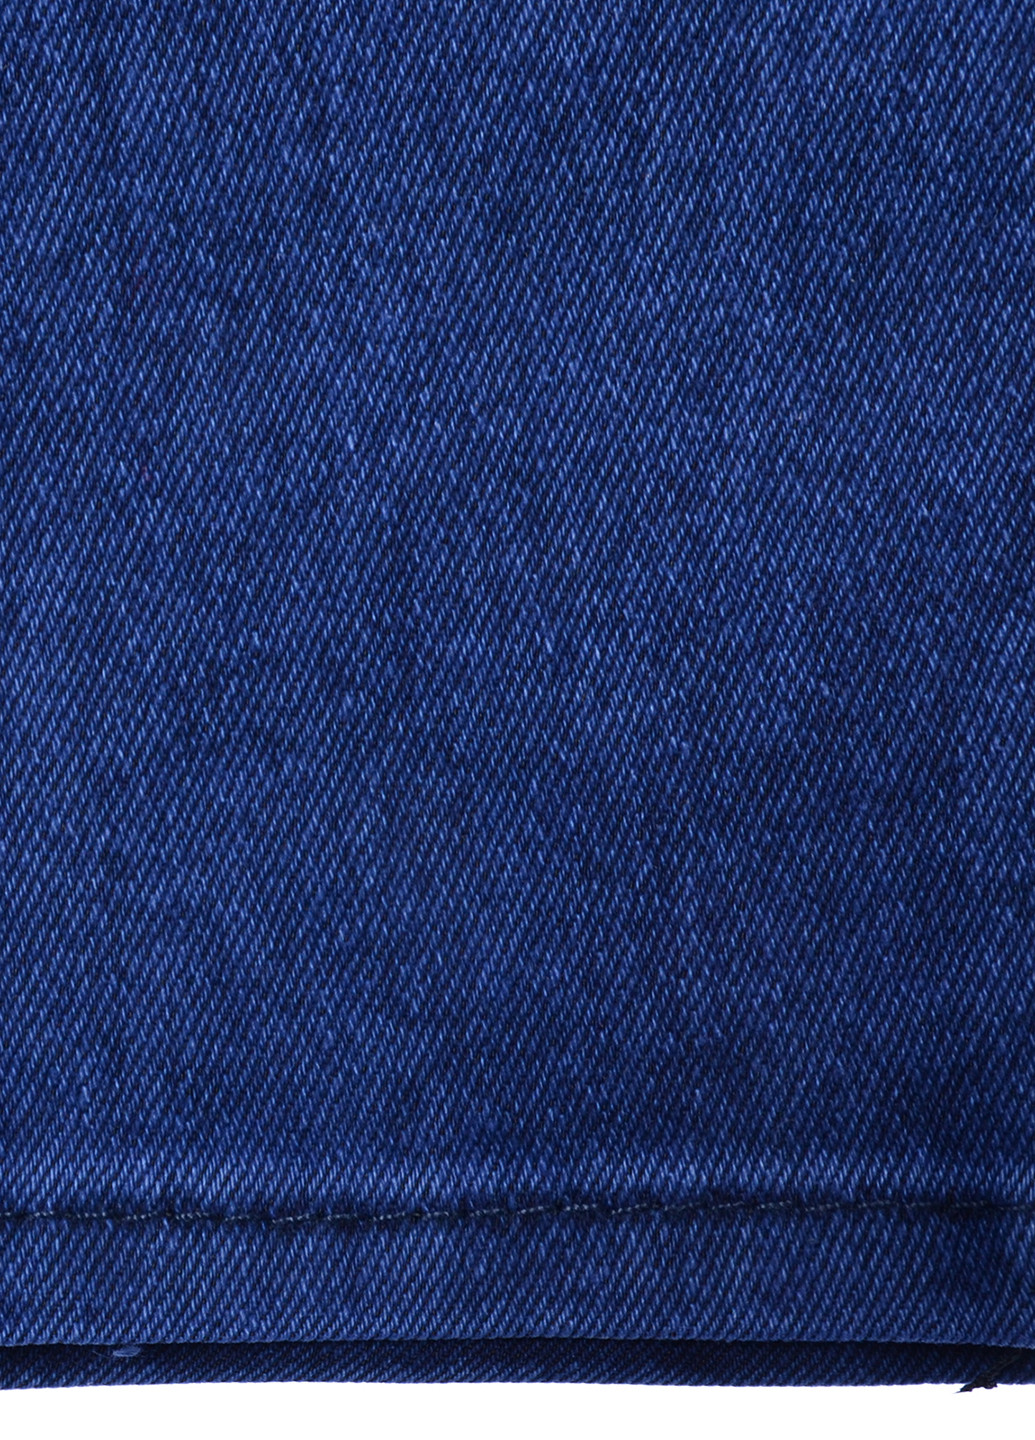 Синие демисезонные со средней талией джинсы Derin